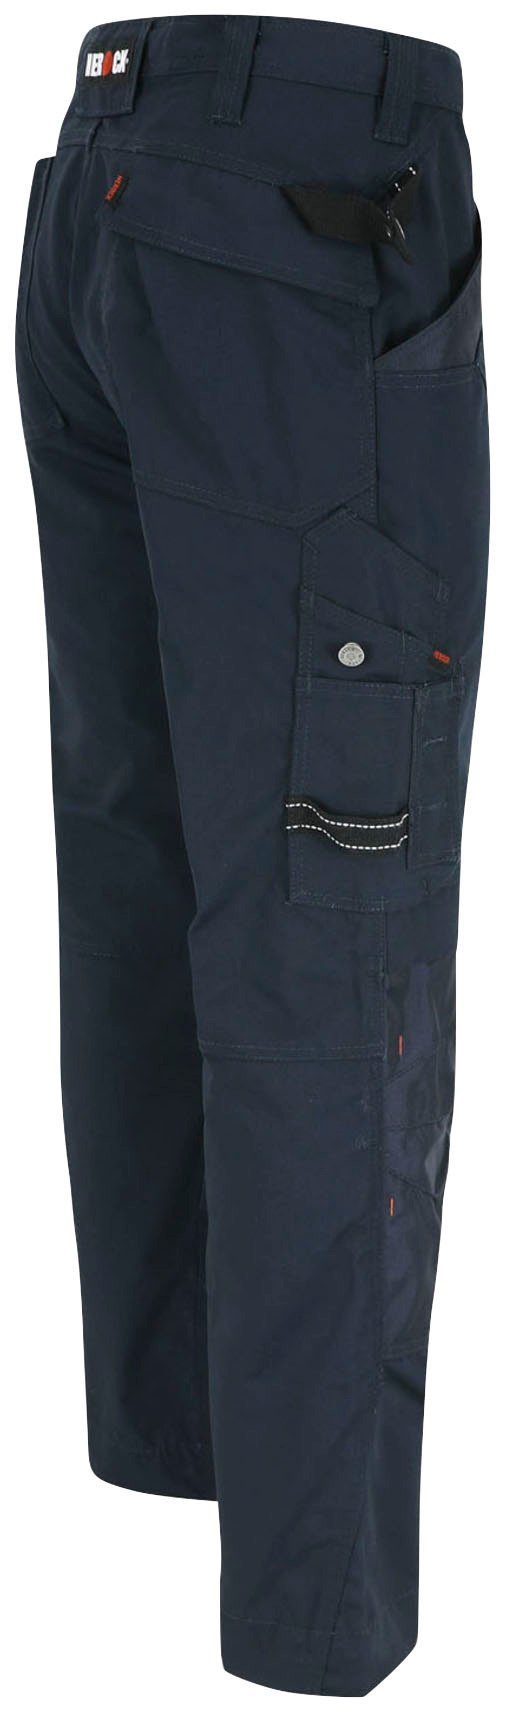 marine bequem Regelbarer Wasserabweisend Apollo Herock Taschen - Bund 8 leicht - Hose - & Arbeitshose